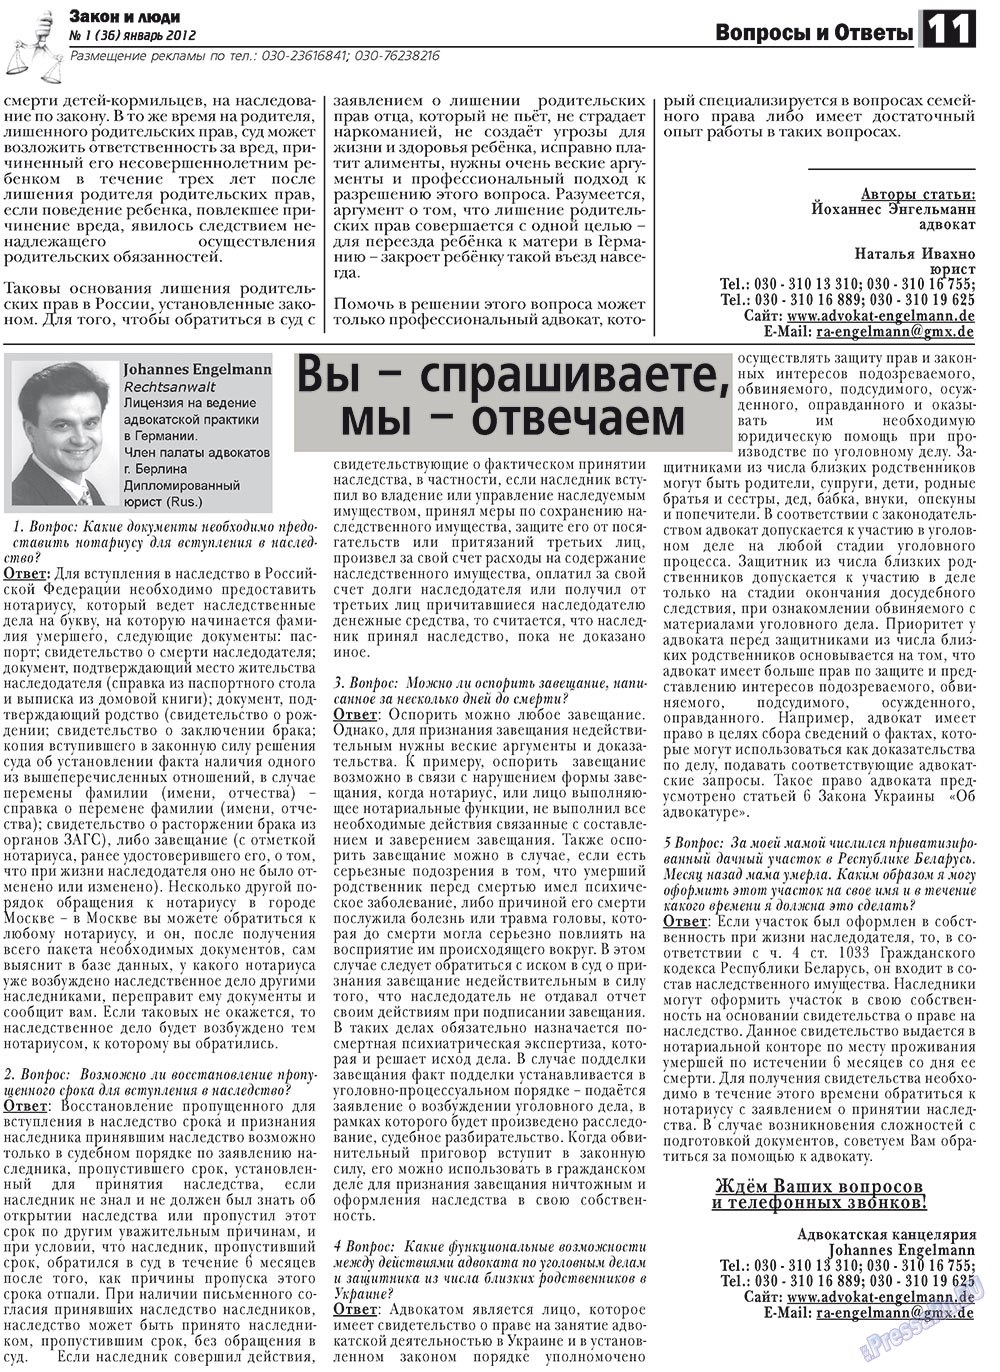 Закон и люди, газета. 2013 №1 стр.11